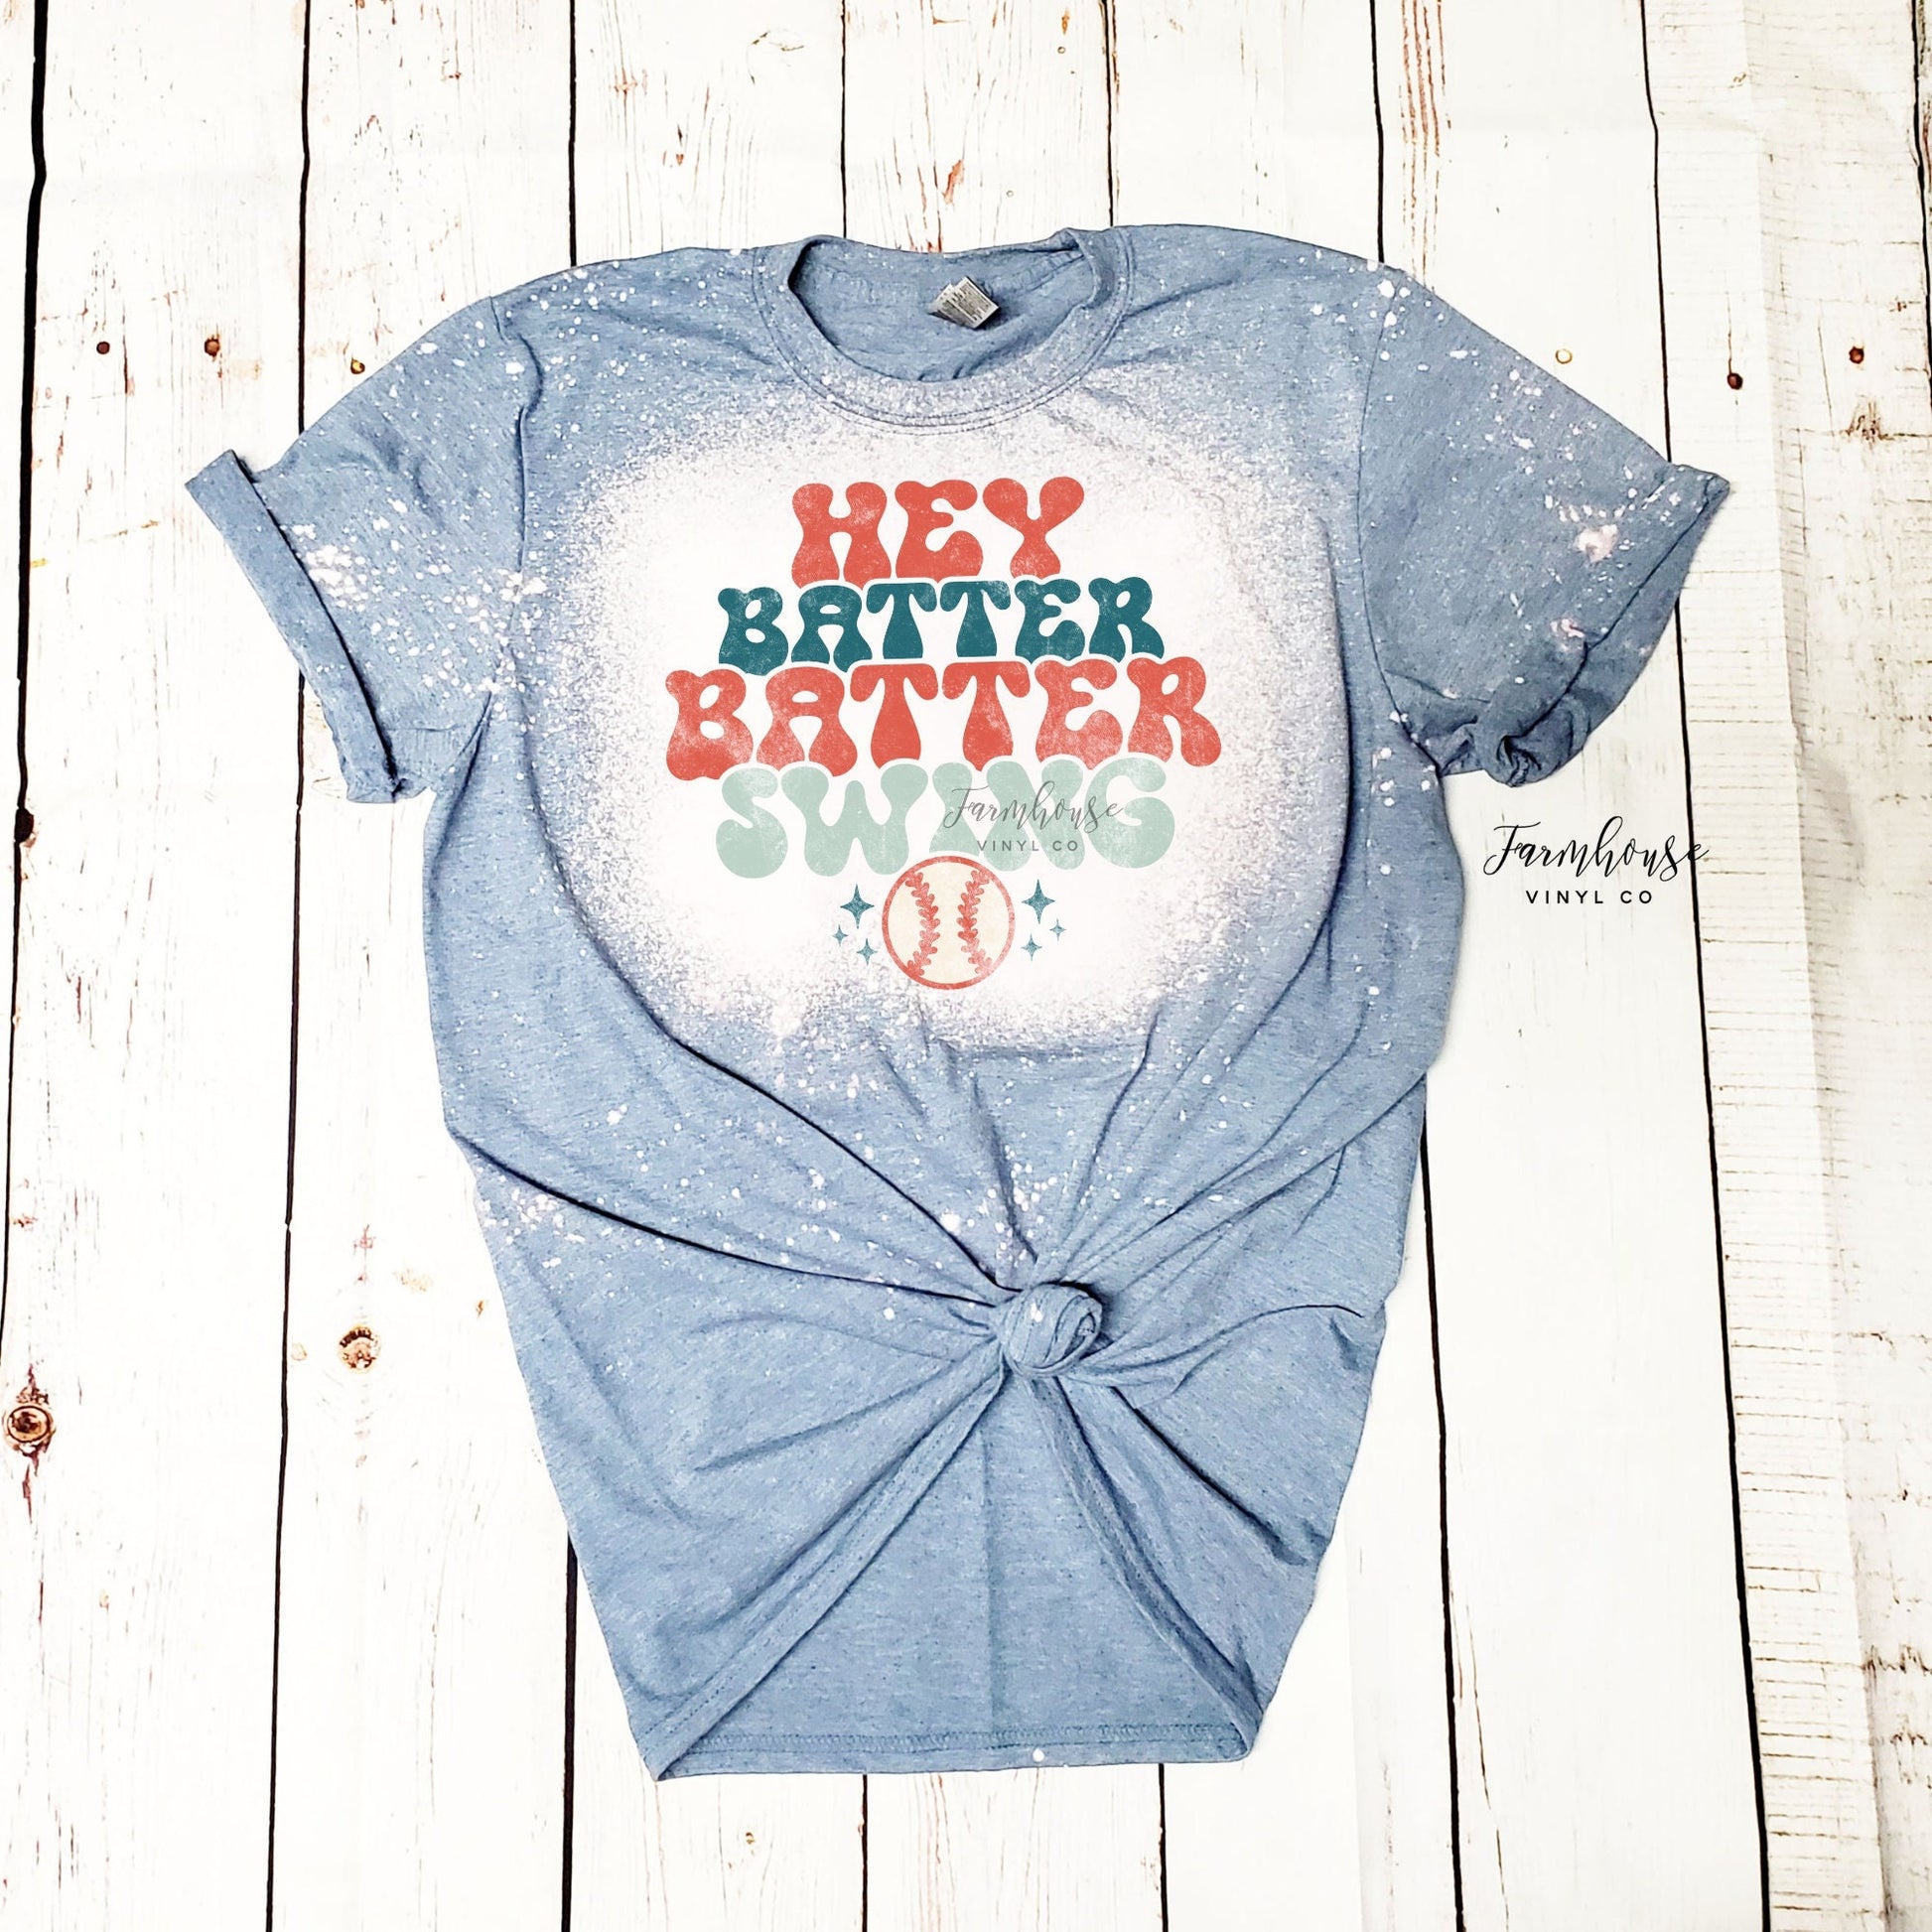 Hey Batter Batter Swing Baseball Shirt - Farmhouse Vinyl Co